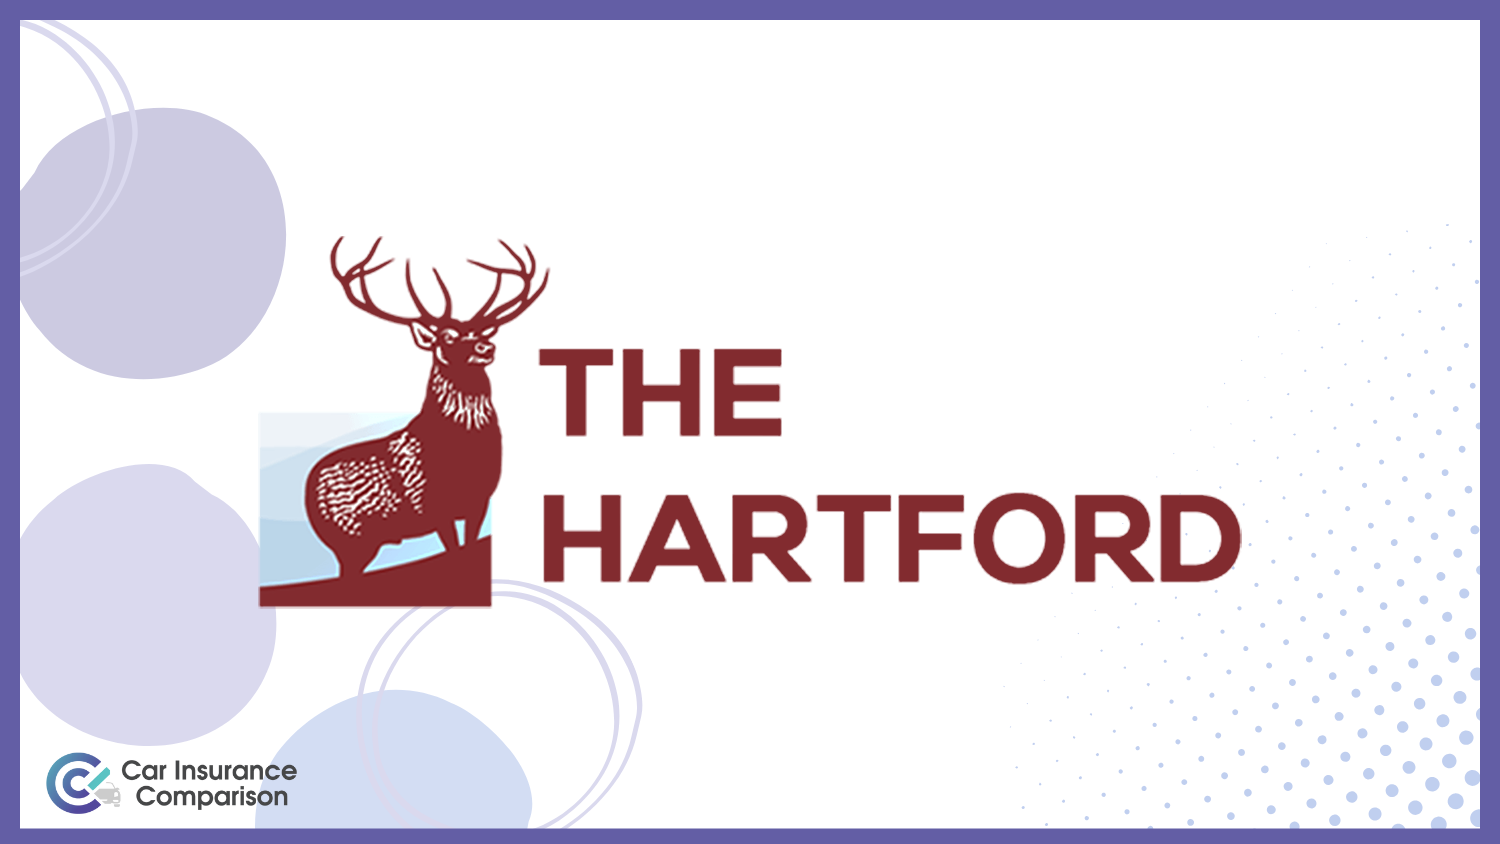 The Hartford: Best Car Insurance for Veterans